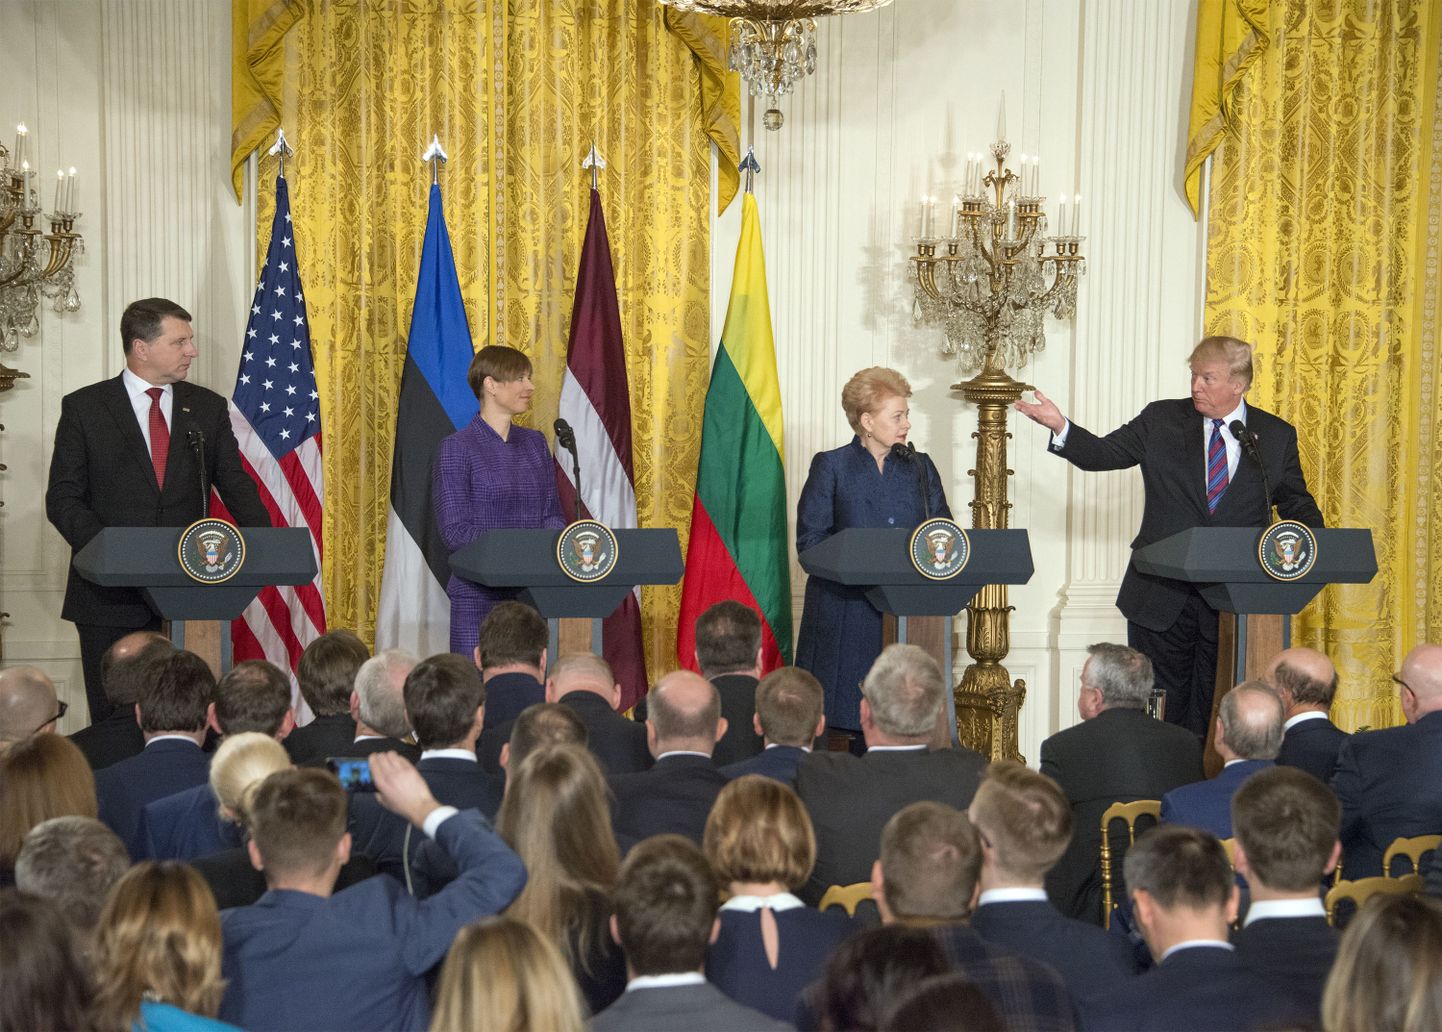 Leedu president Dalia Grybauskaitė, Eesti president Kersti Kaljulaid ja Läti president Raimonds Vējonis kohtumisel Donald Trumpiga.